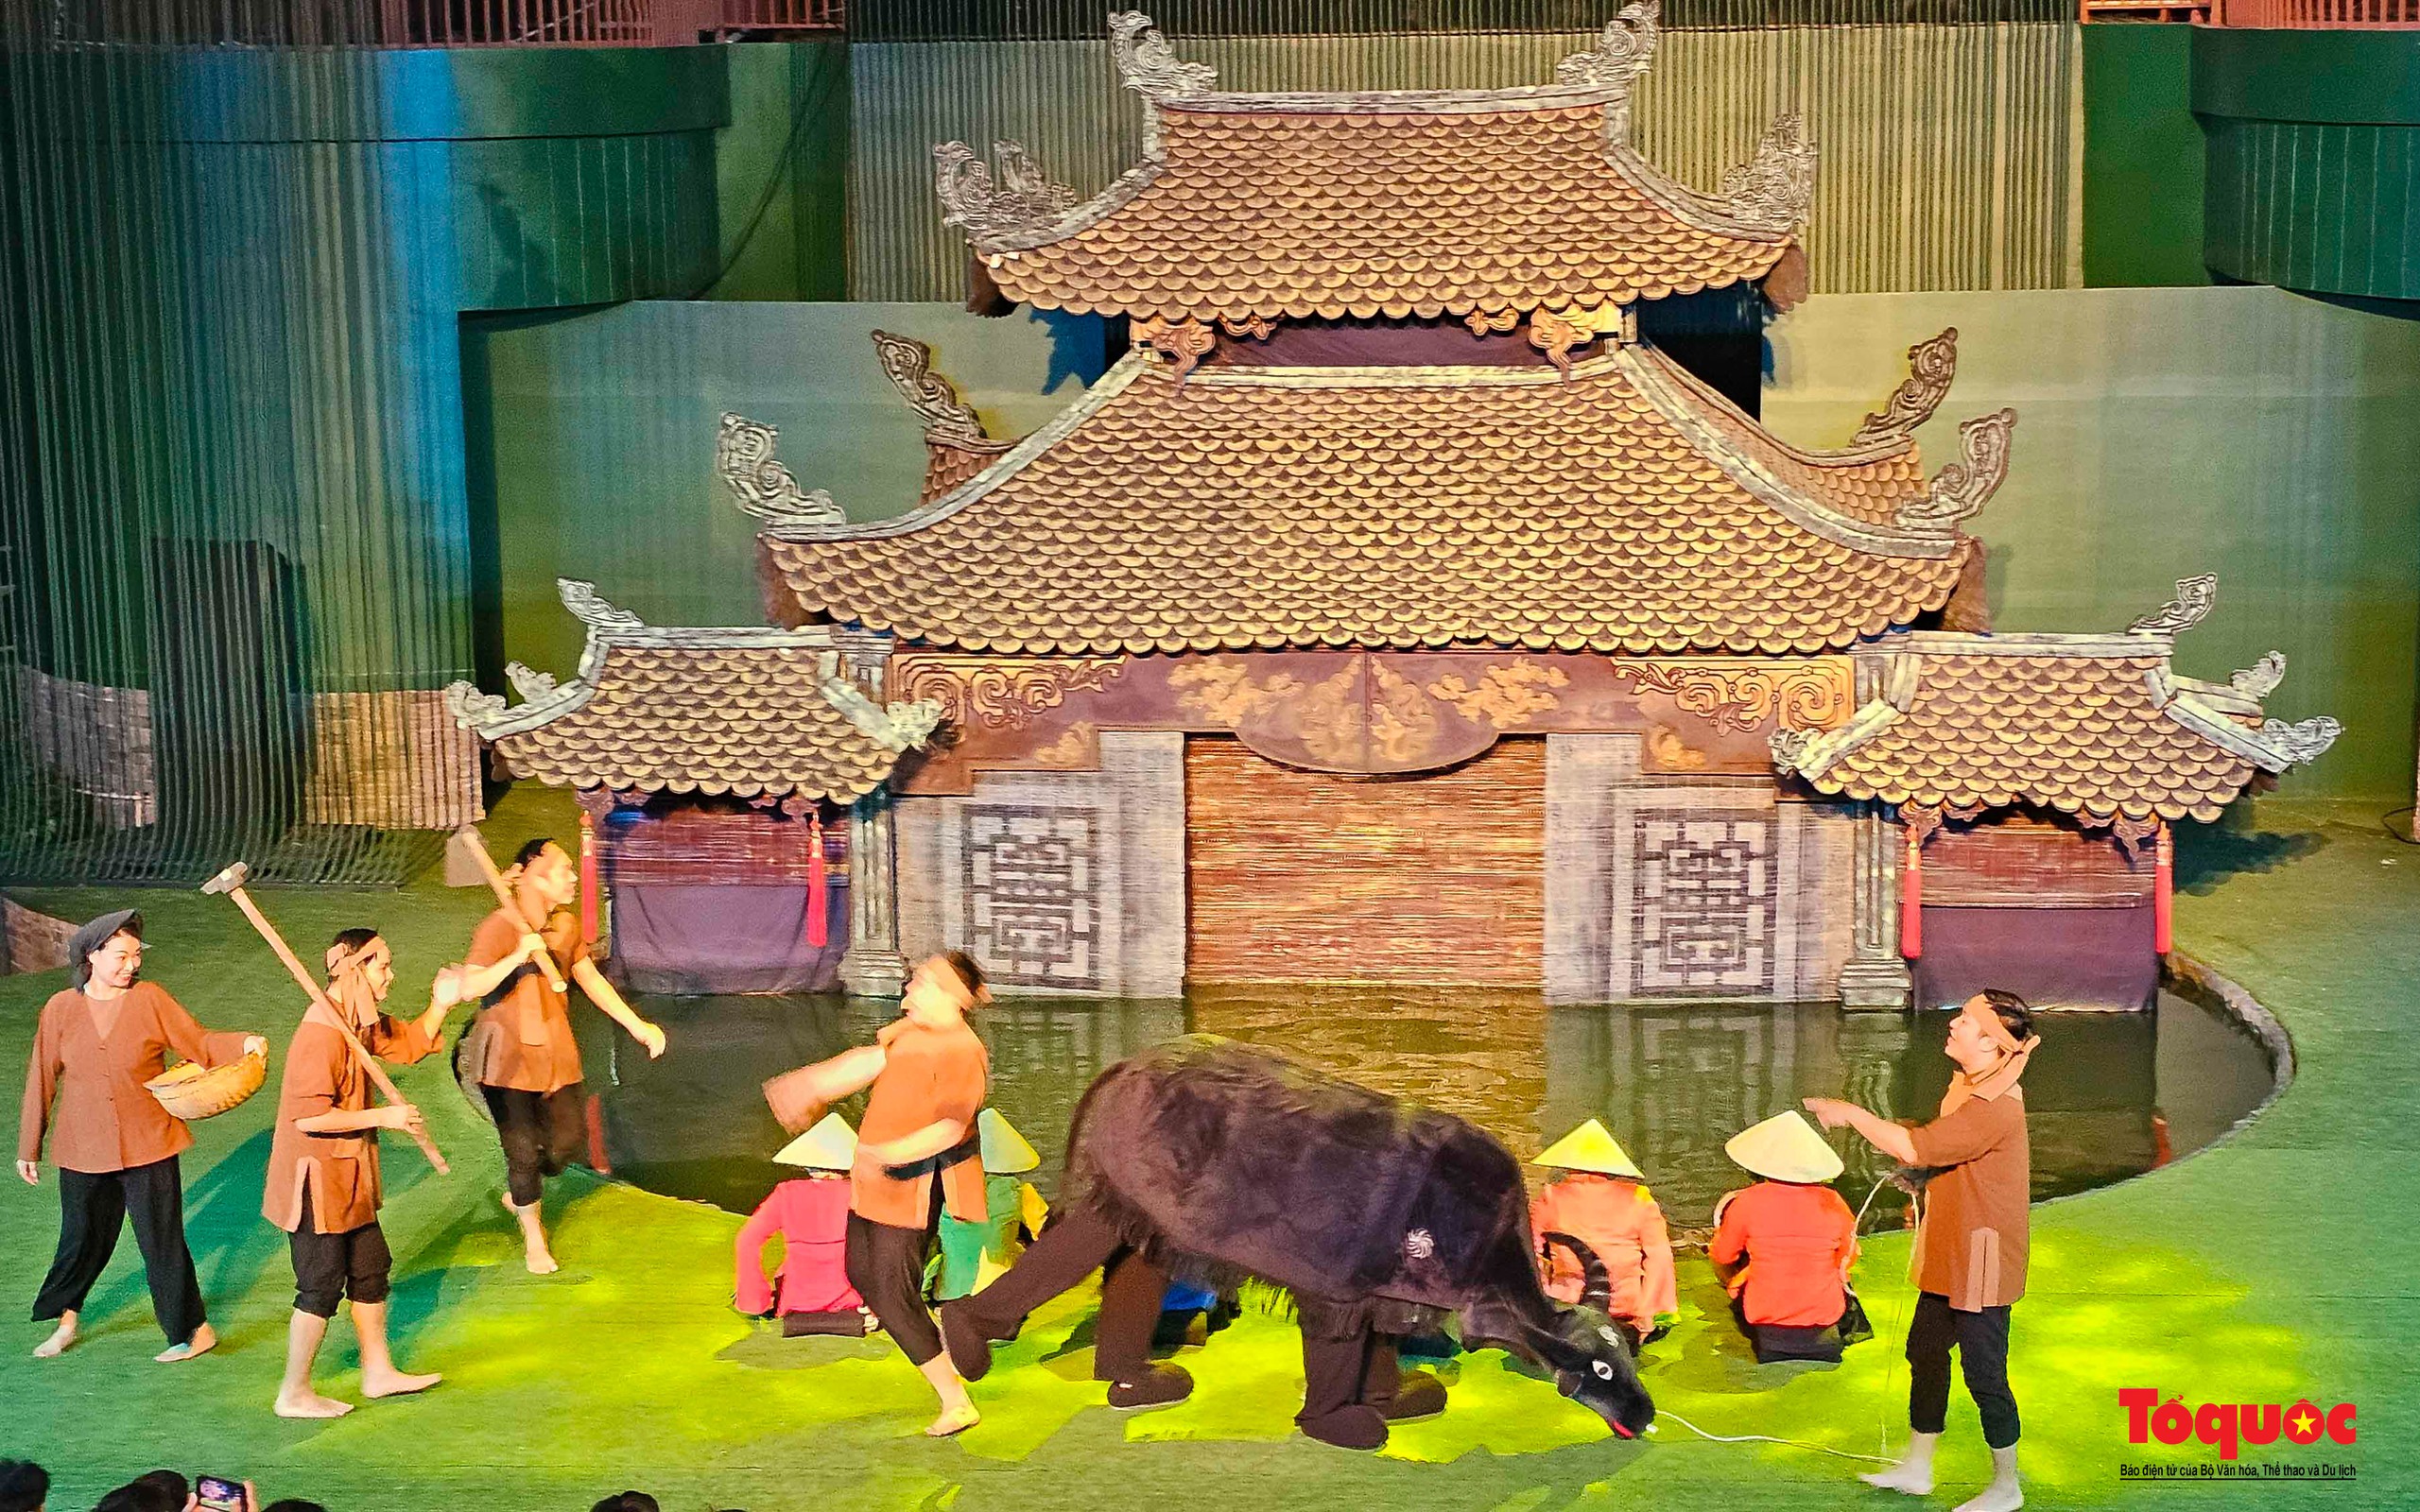 Du khách thích thú khám phá dòng chảy văn hóa Việt tại nhà hát múa rối lớn nhất miền Trung - Ảnh 11.